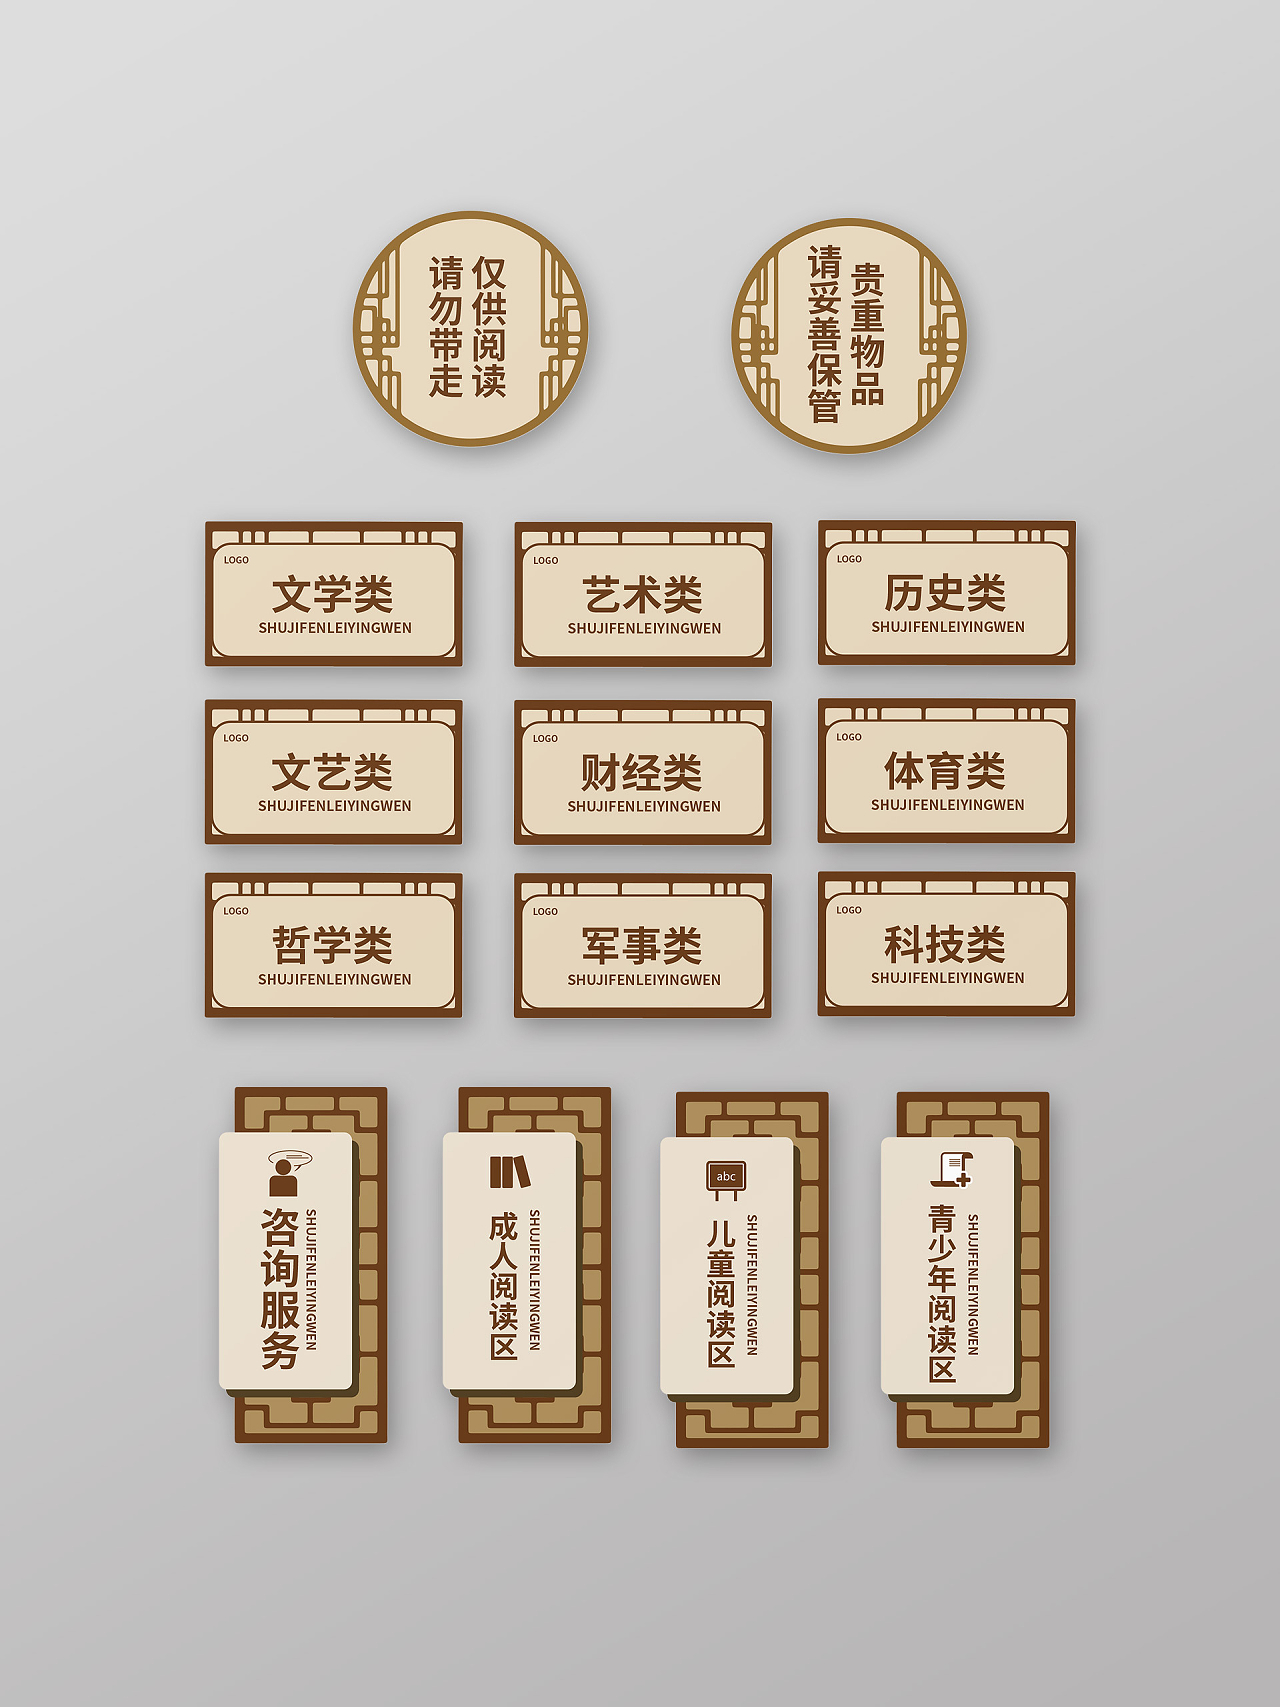 褐色中国风格学校阅读室门牌设计学校门牌